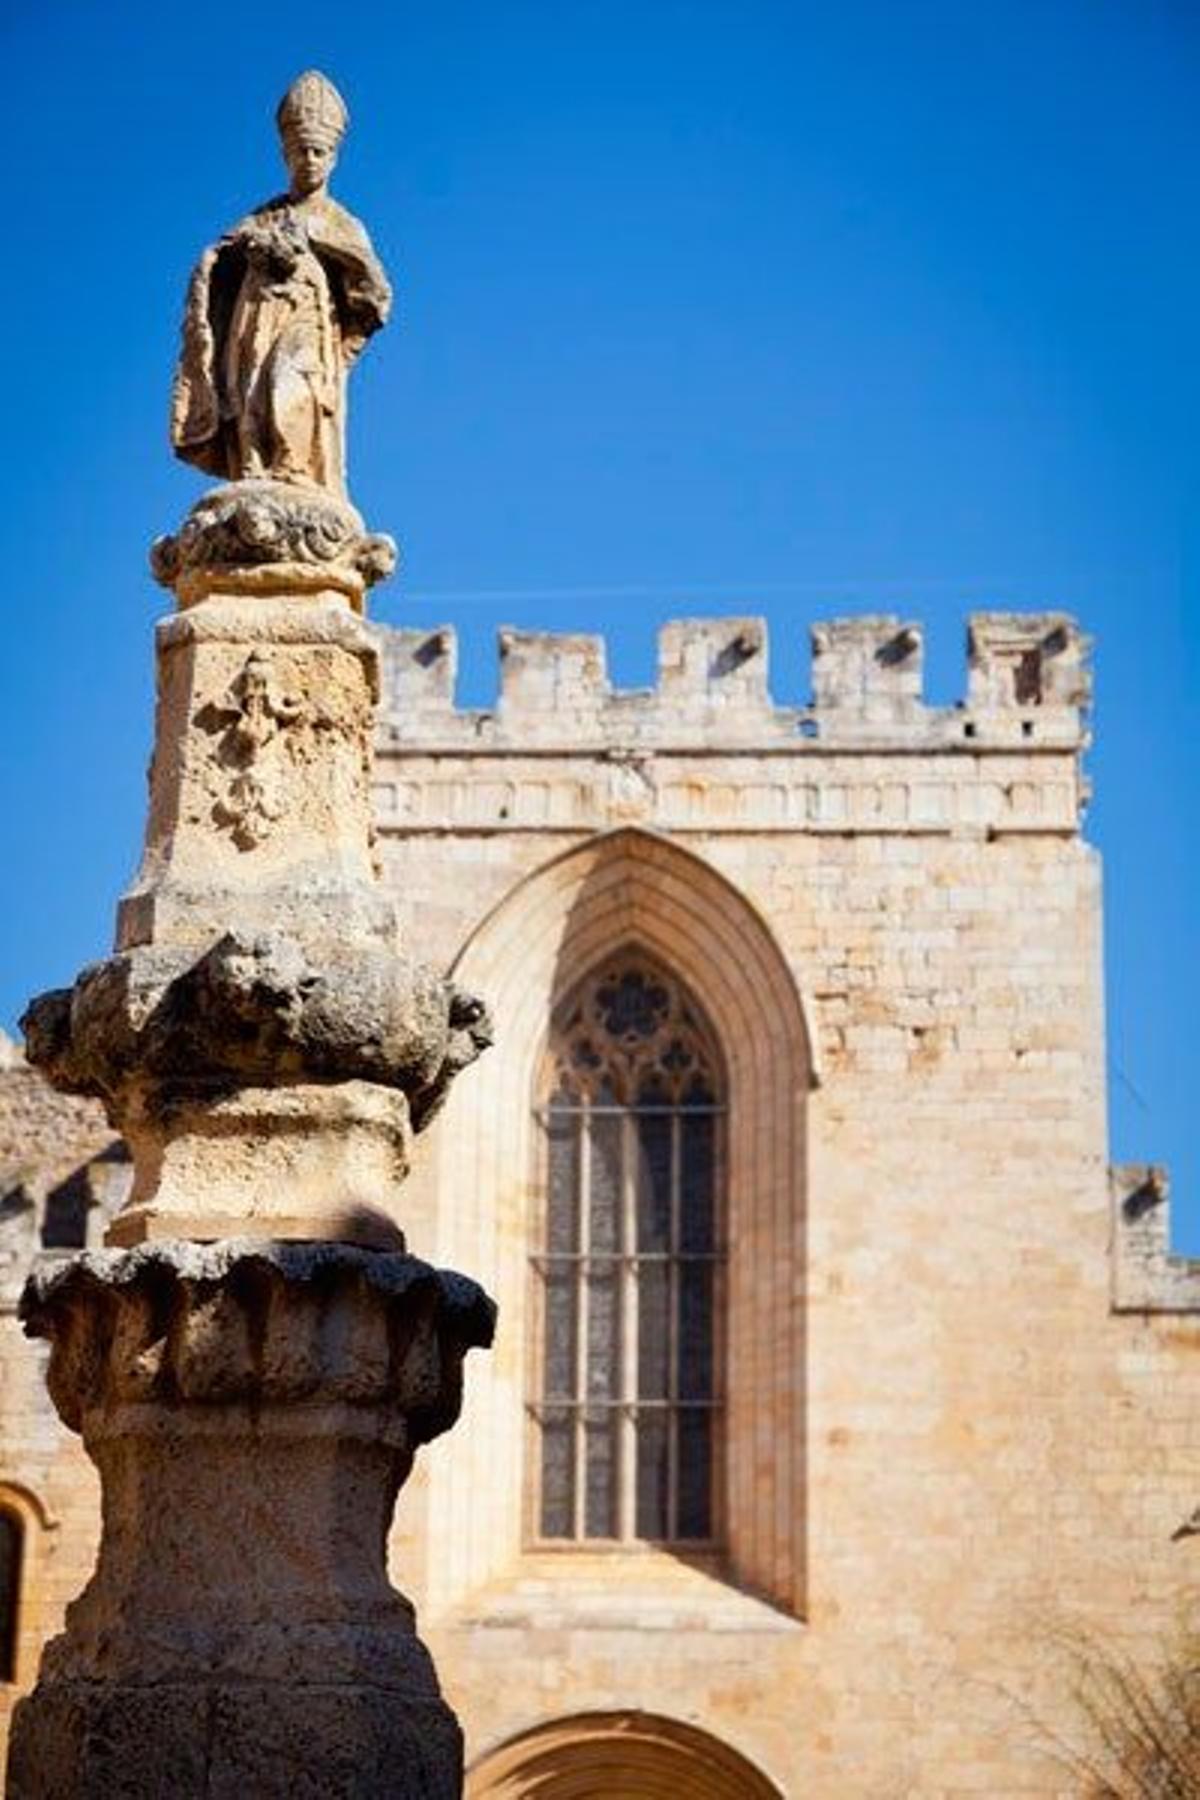 Estatua dedicada a San Bernardo Calbó, antiguo abad del monasterio de Santes Creus.